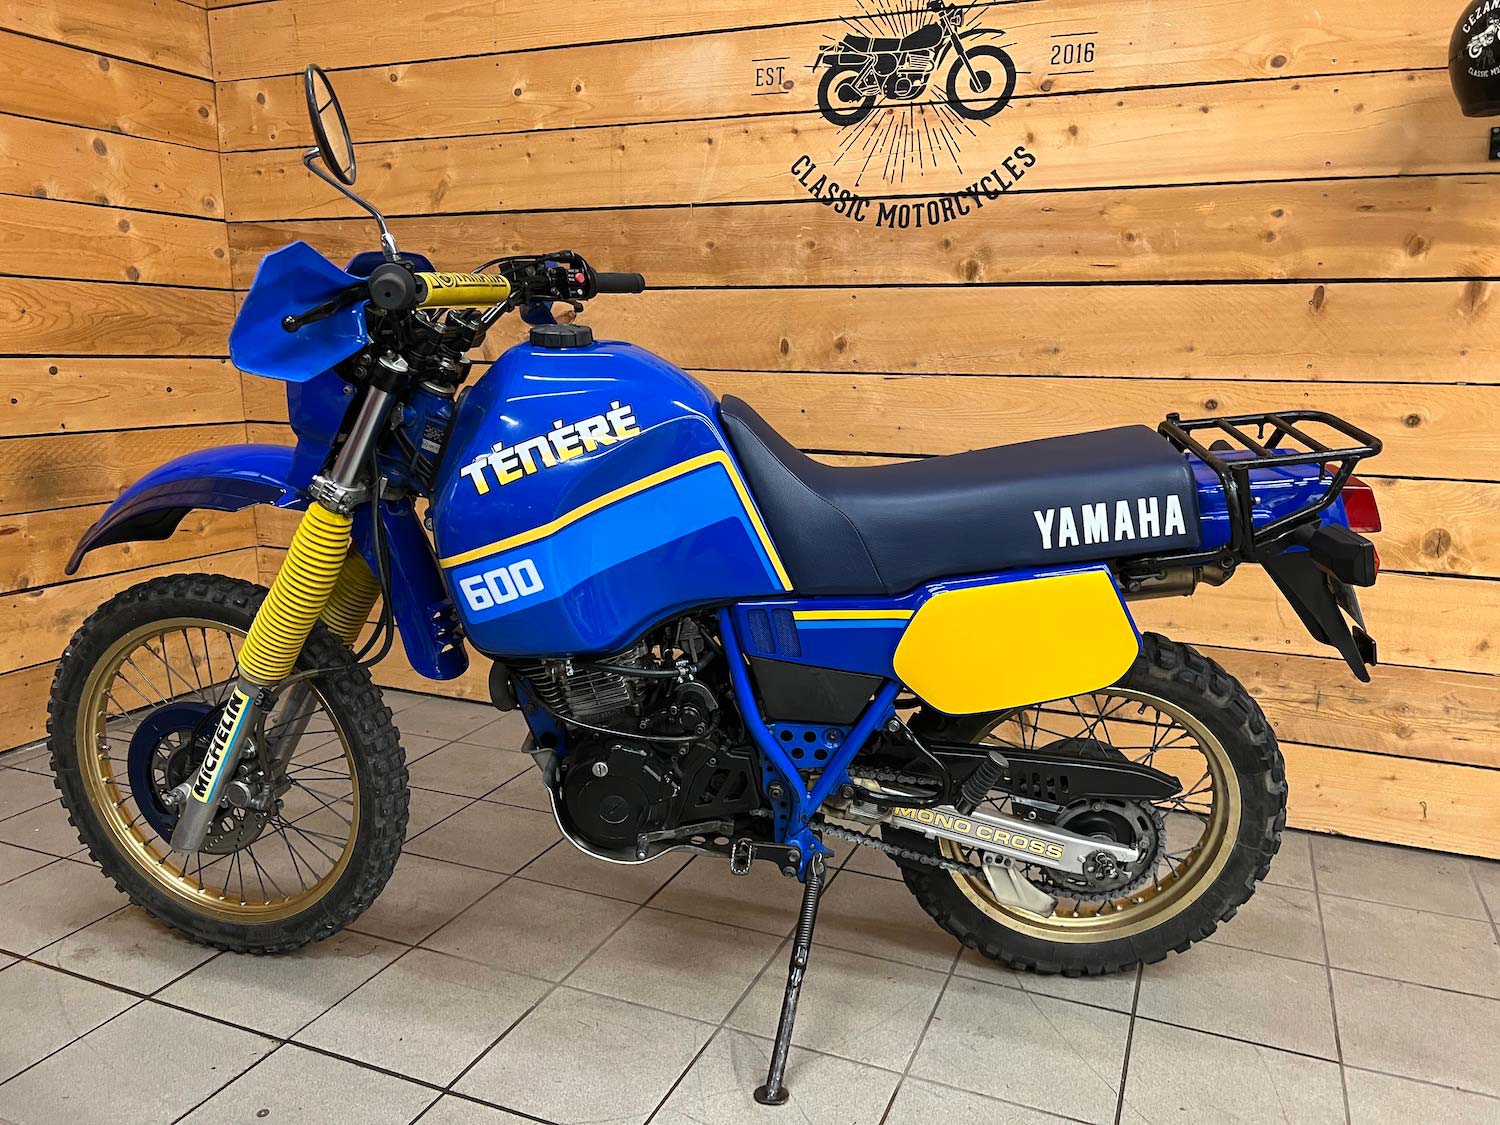 Yamaha_Tenere_XTZ600_cezanne_classic_motorcycle_3-147.jpg